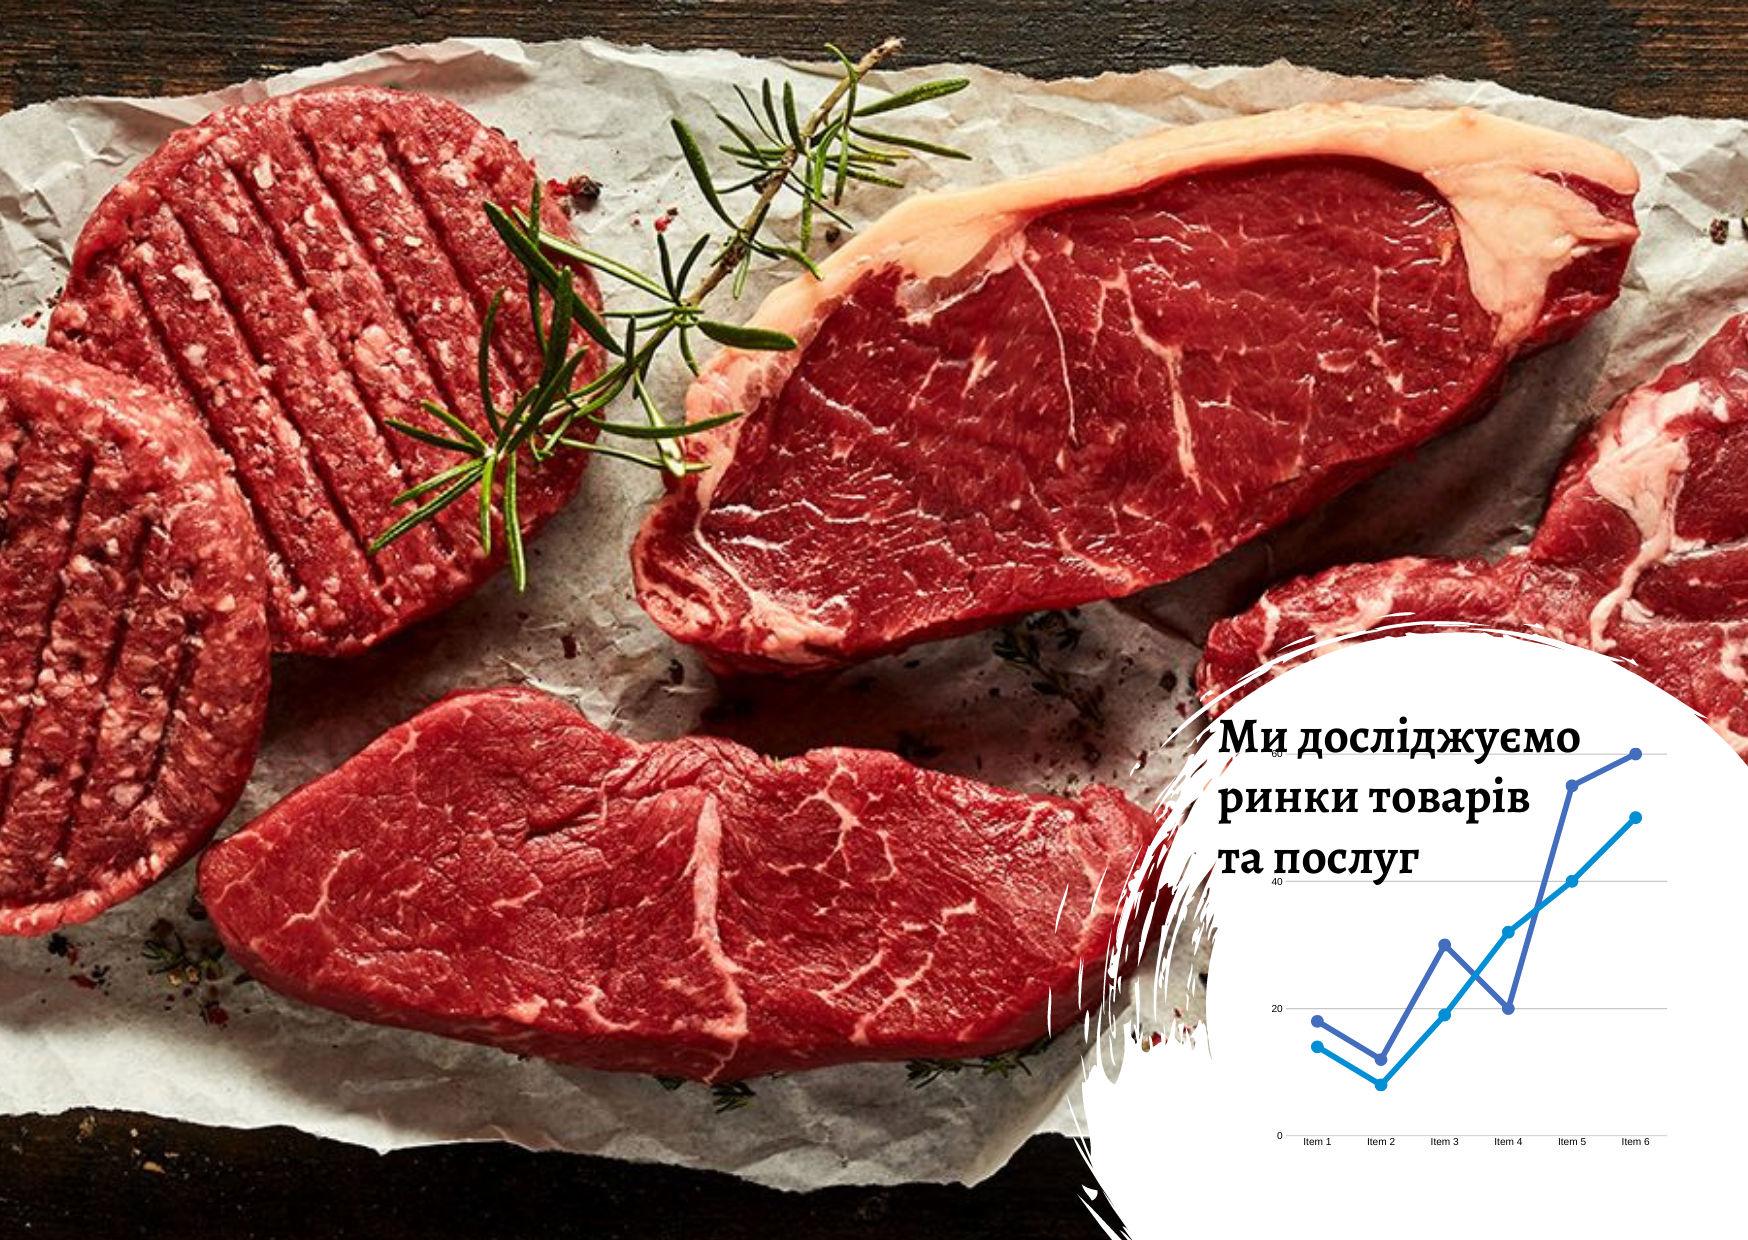 Ринок м'яса в Україні з фокусом на яловичину